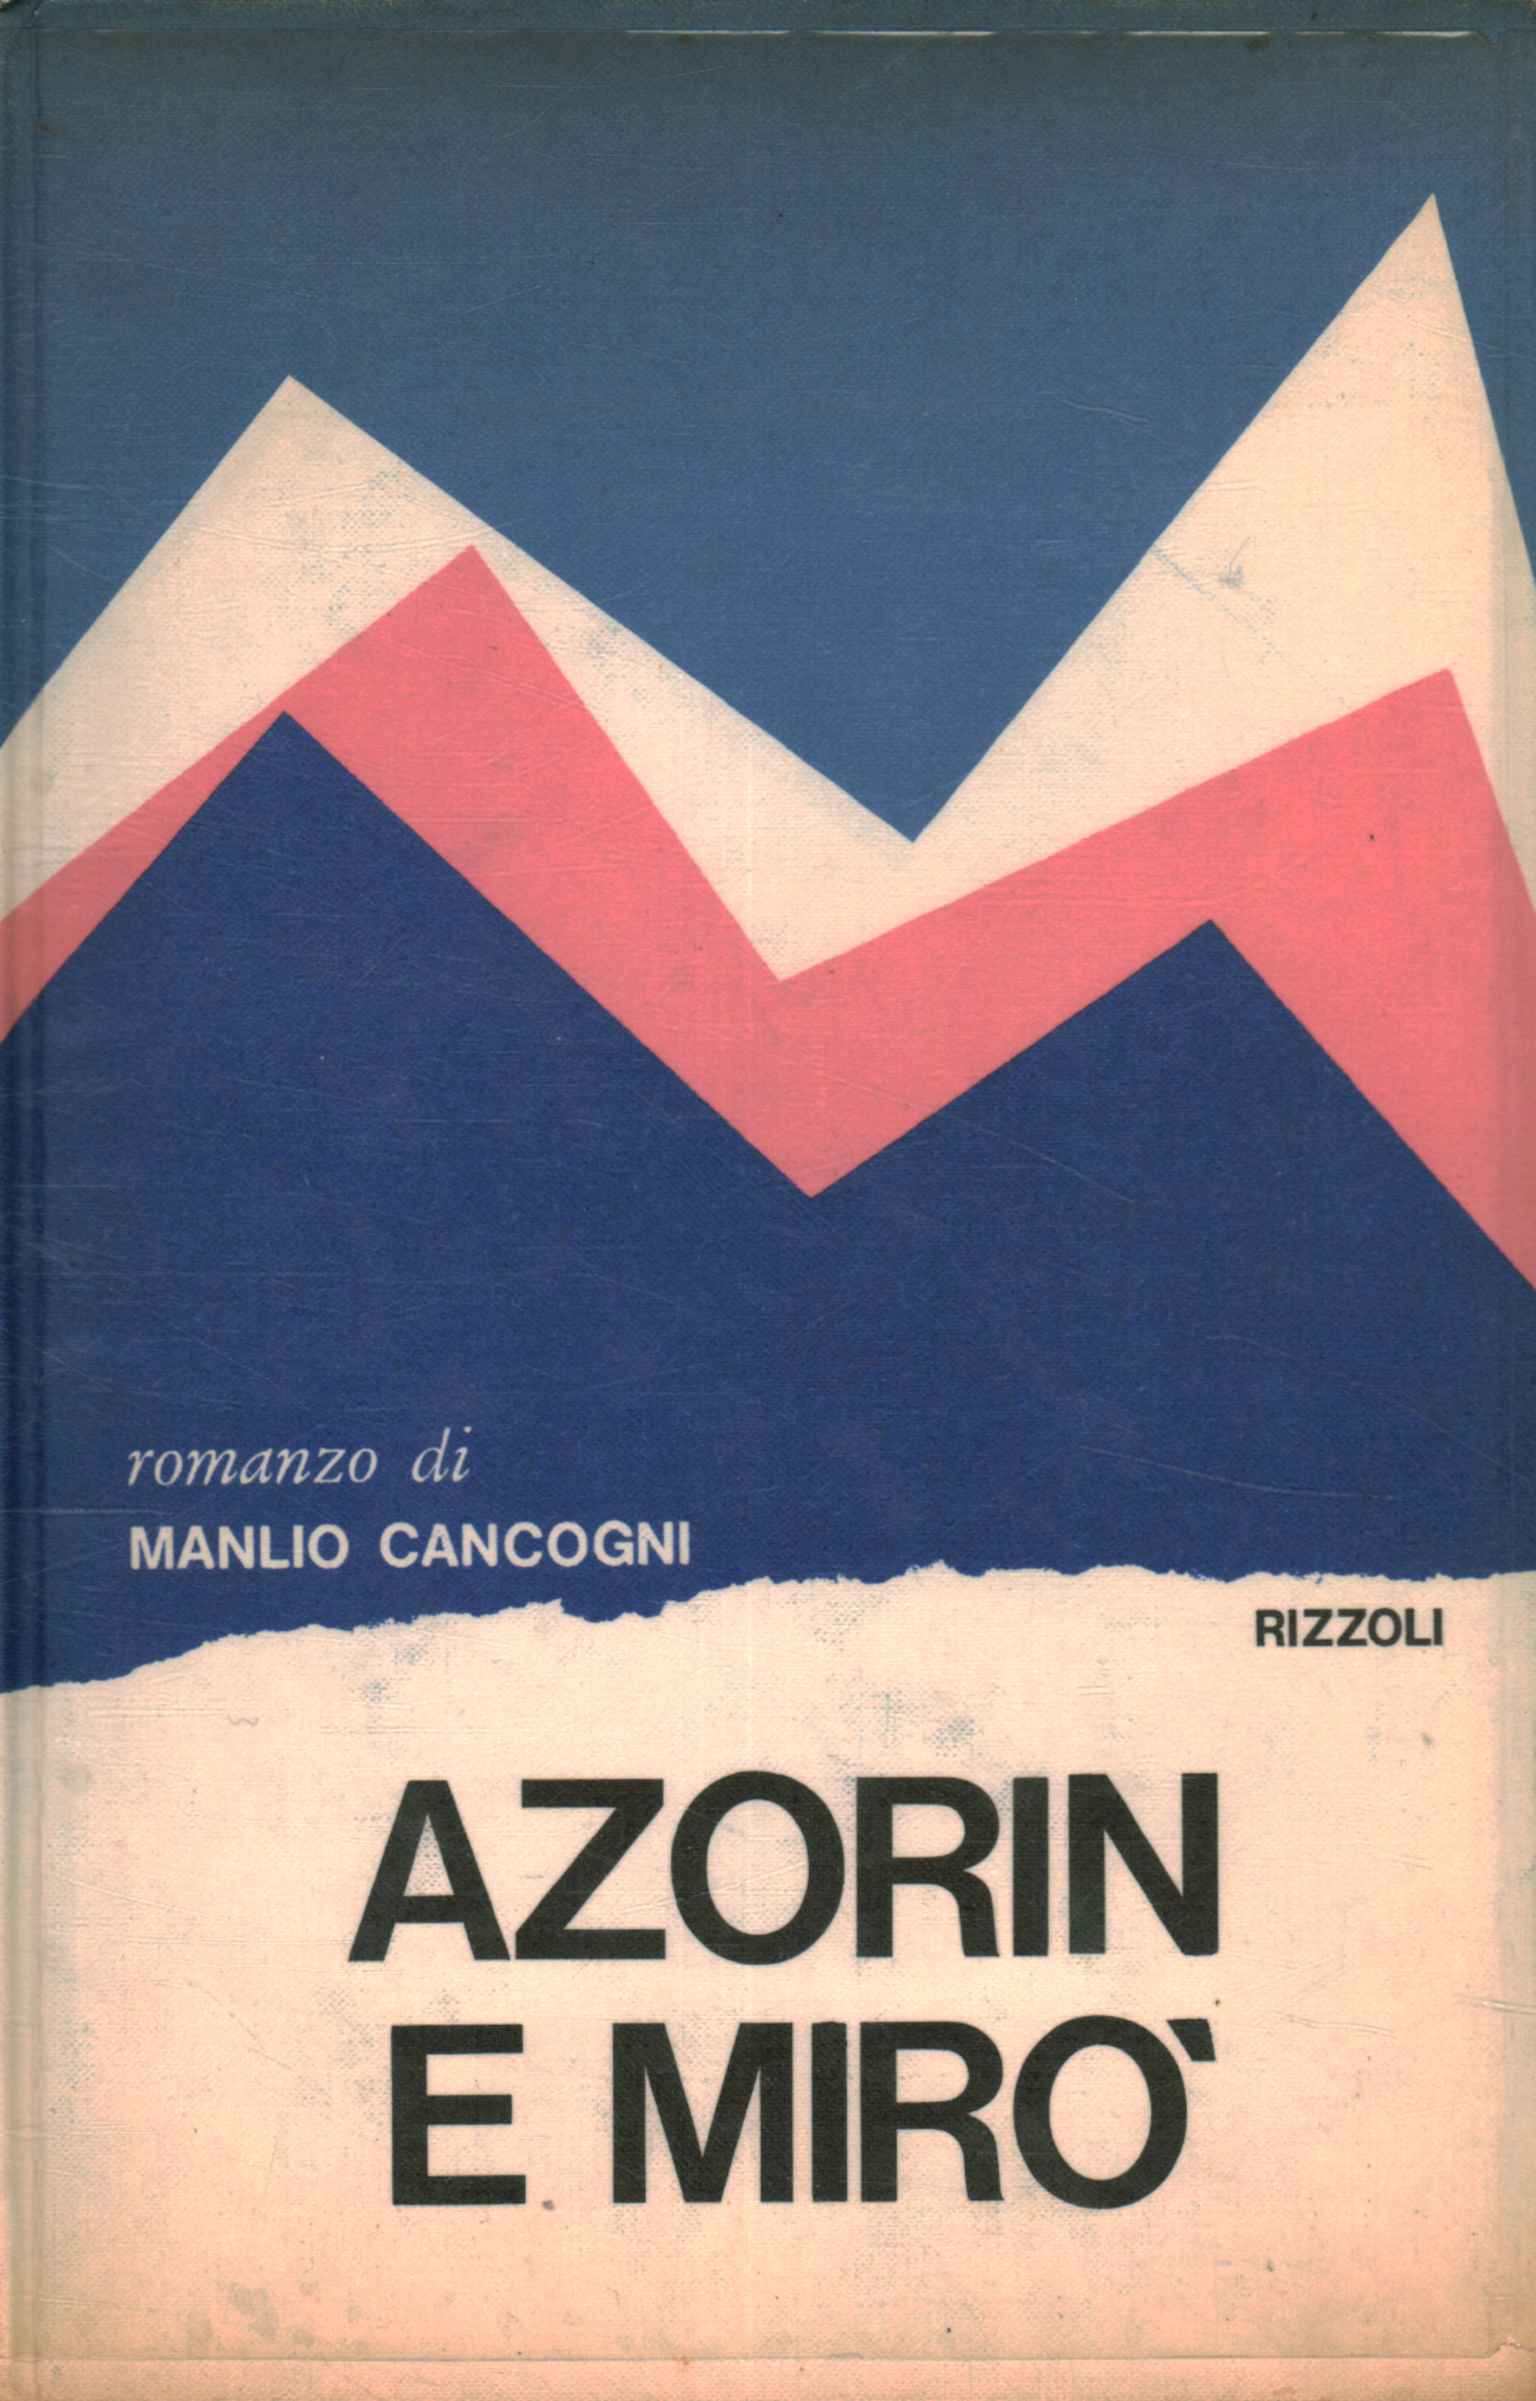 Azorin and Miro